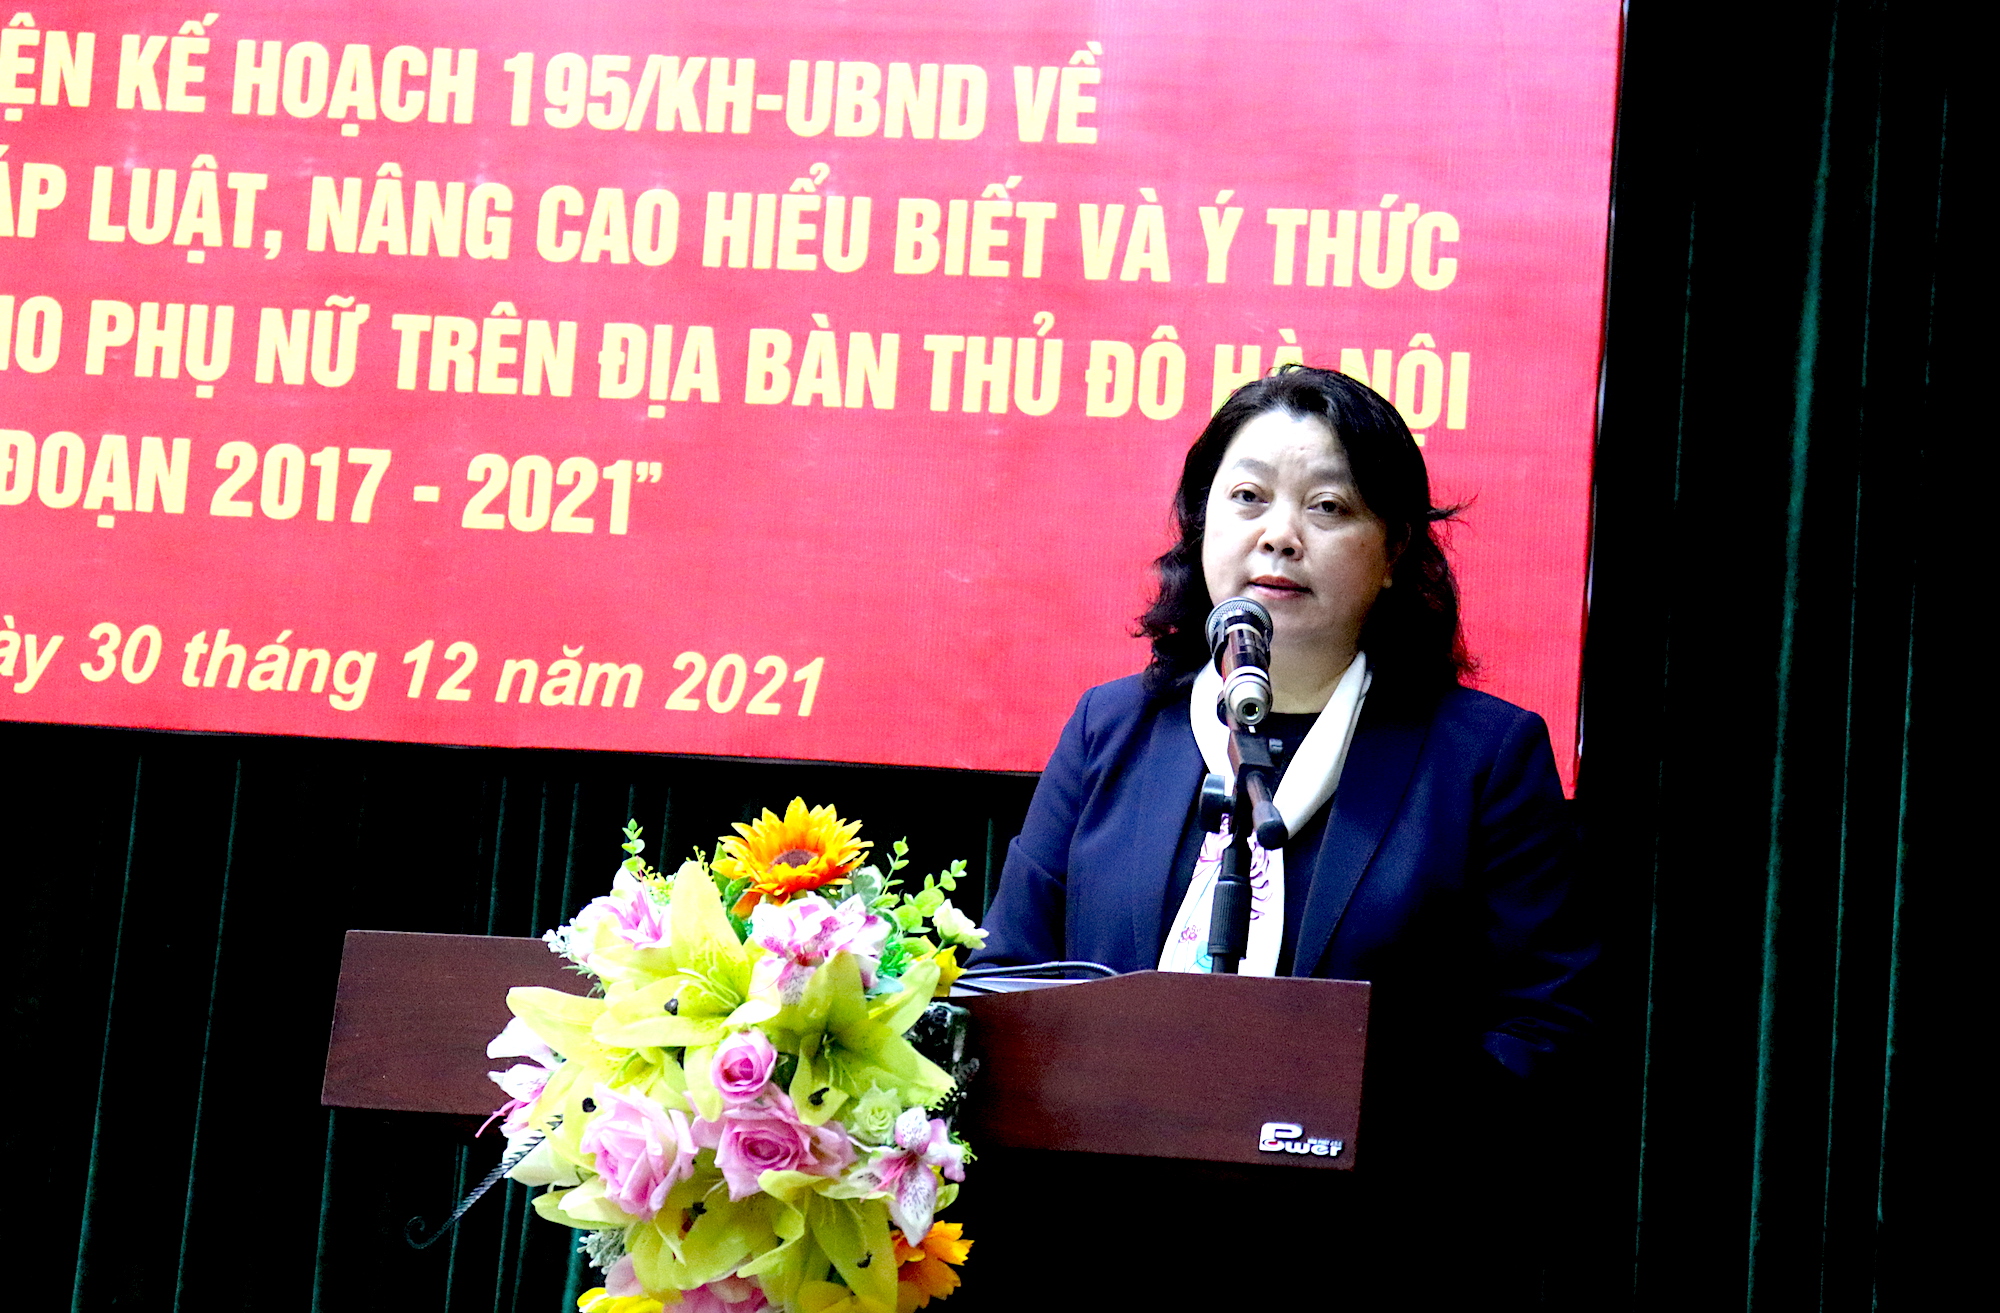 Đồng chí Nguyễn Thị Thu Thuỷ, Phó Chủ tịch Thường trực, Hội LHPN TP Hà Nội đánh giá kết quả 5 năm thực hiện kế hoạch 195/KH-UBND về 